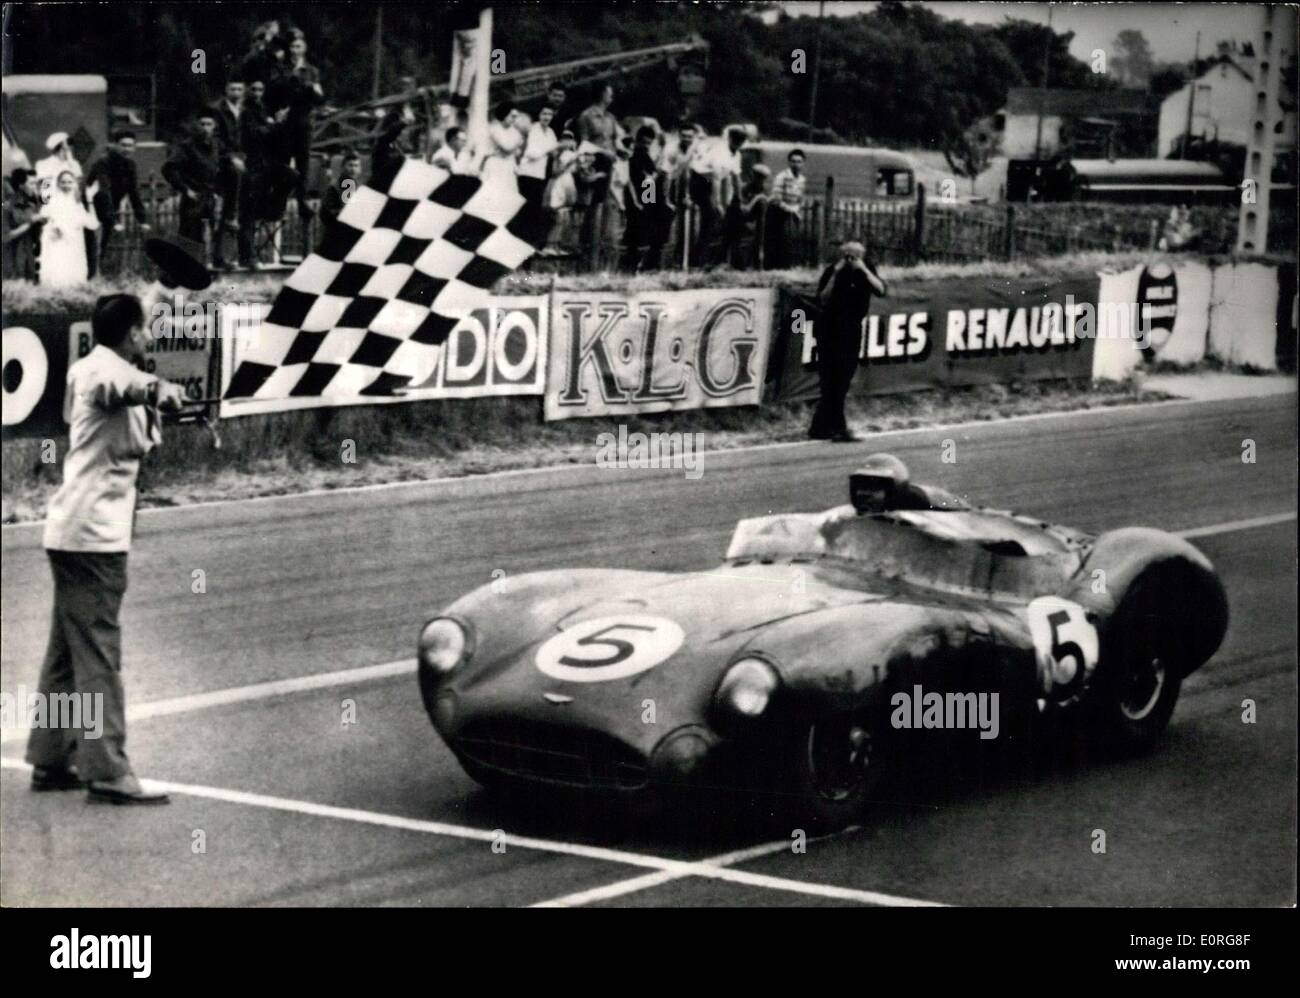 Giugno 21, 1959 - 24 Ore di Le Mans Sports Car gara endurance; foto mostra la Aston Martin pilotata dalla American C. Schelby all'arrivo. Foto Stock